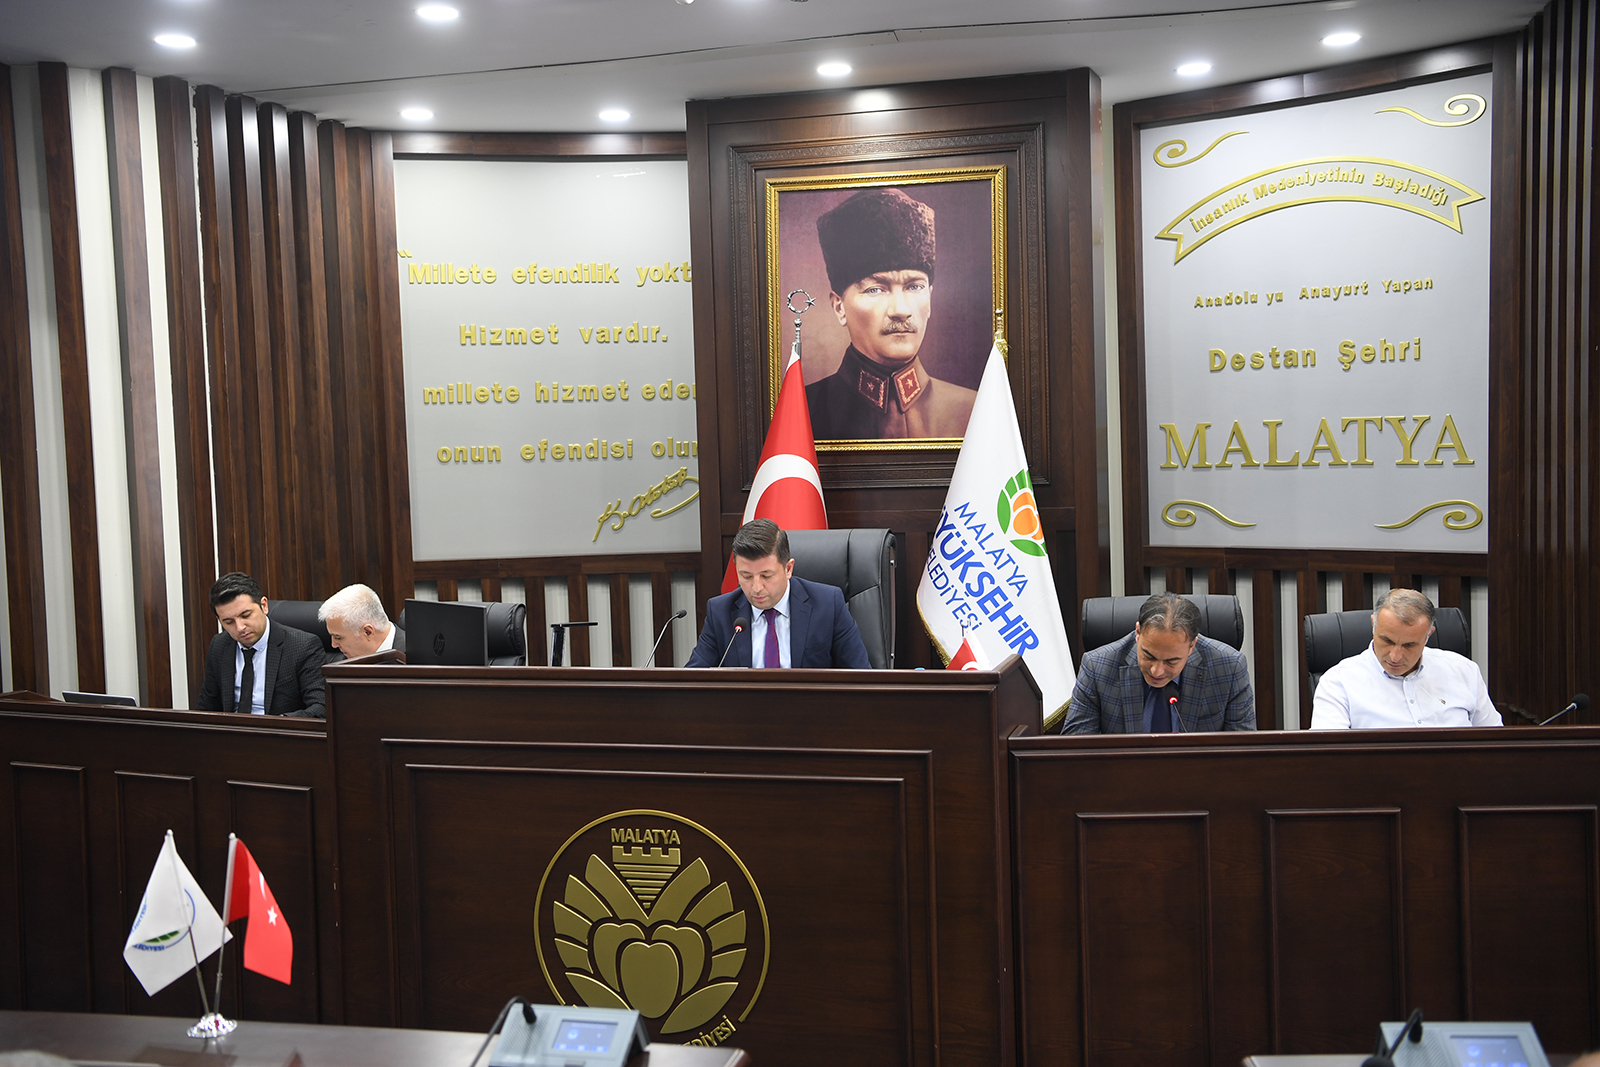 Malatya Büyükşehir Belediye Meclisi 2. birleşimi yapıldı